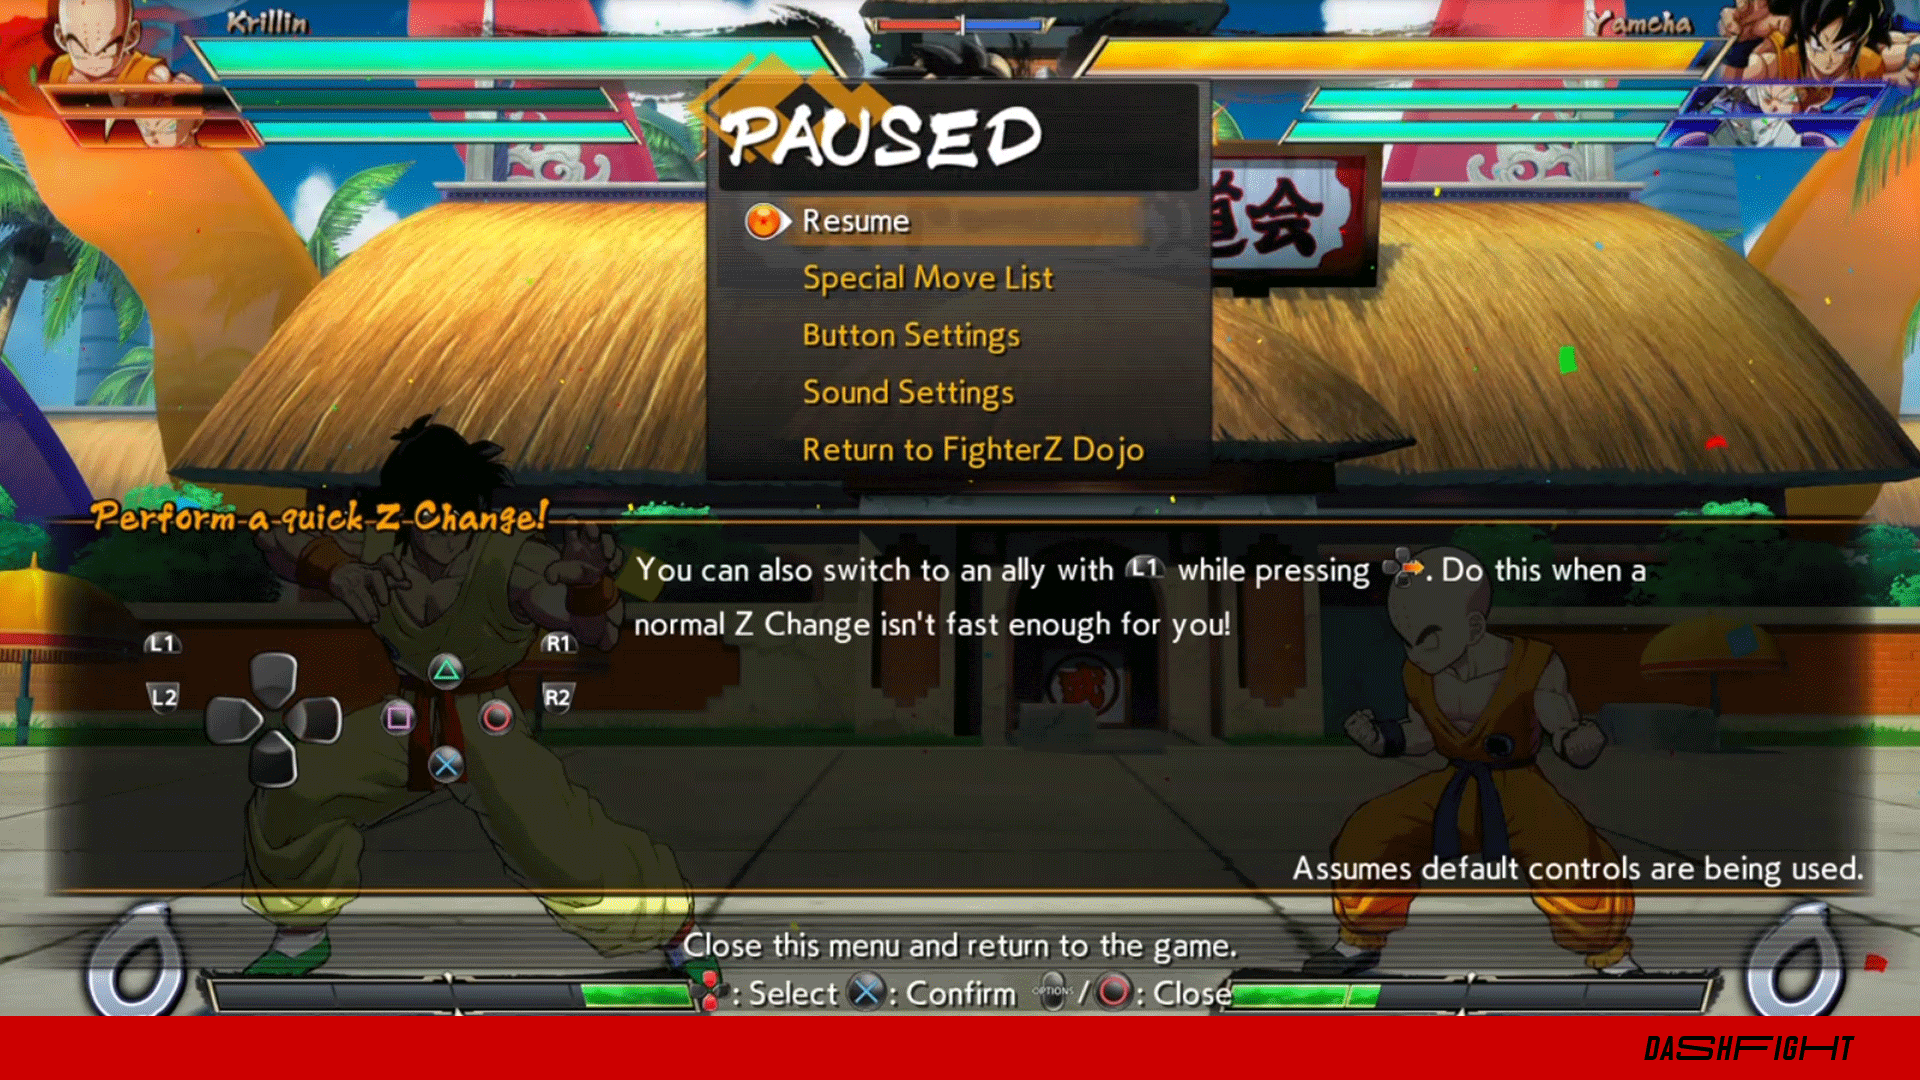 Dragon Ball FighterZ: entenda ranking e pontos do competitivo do game